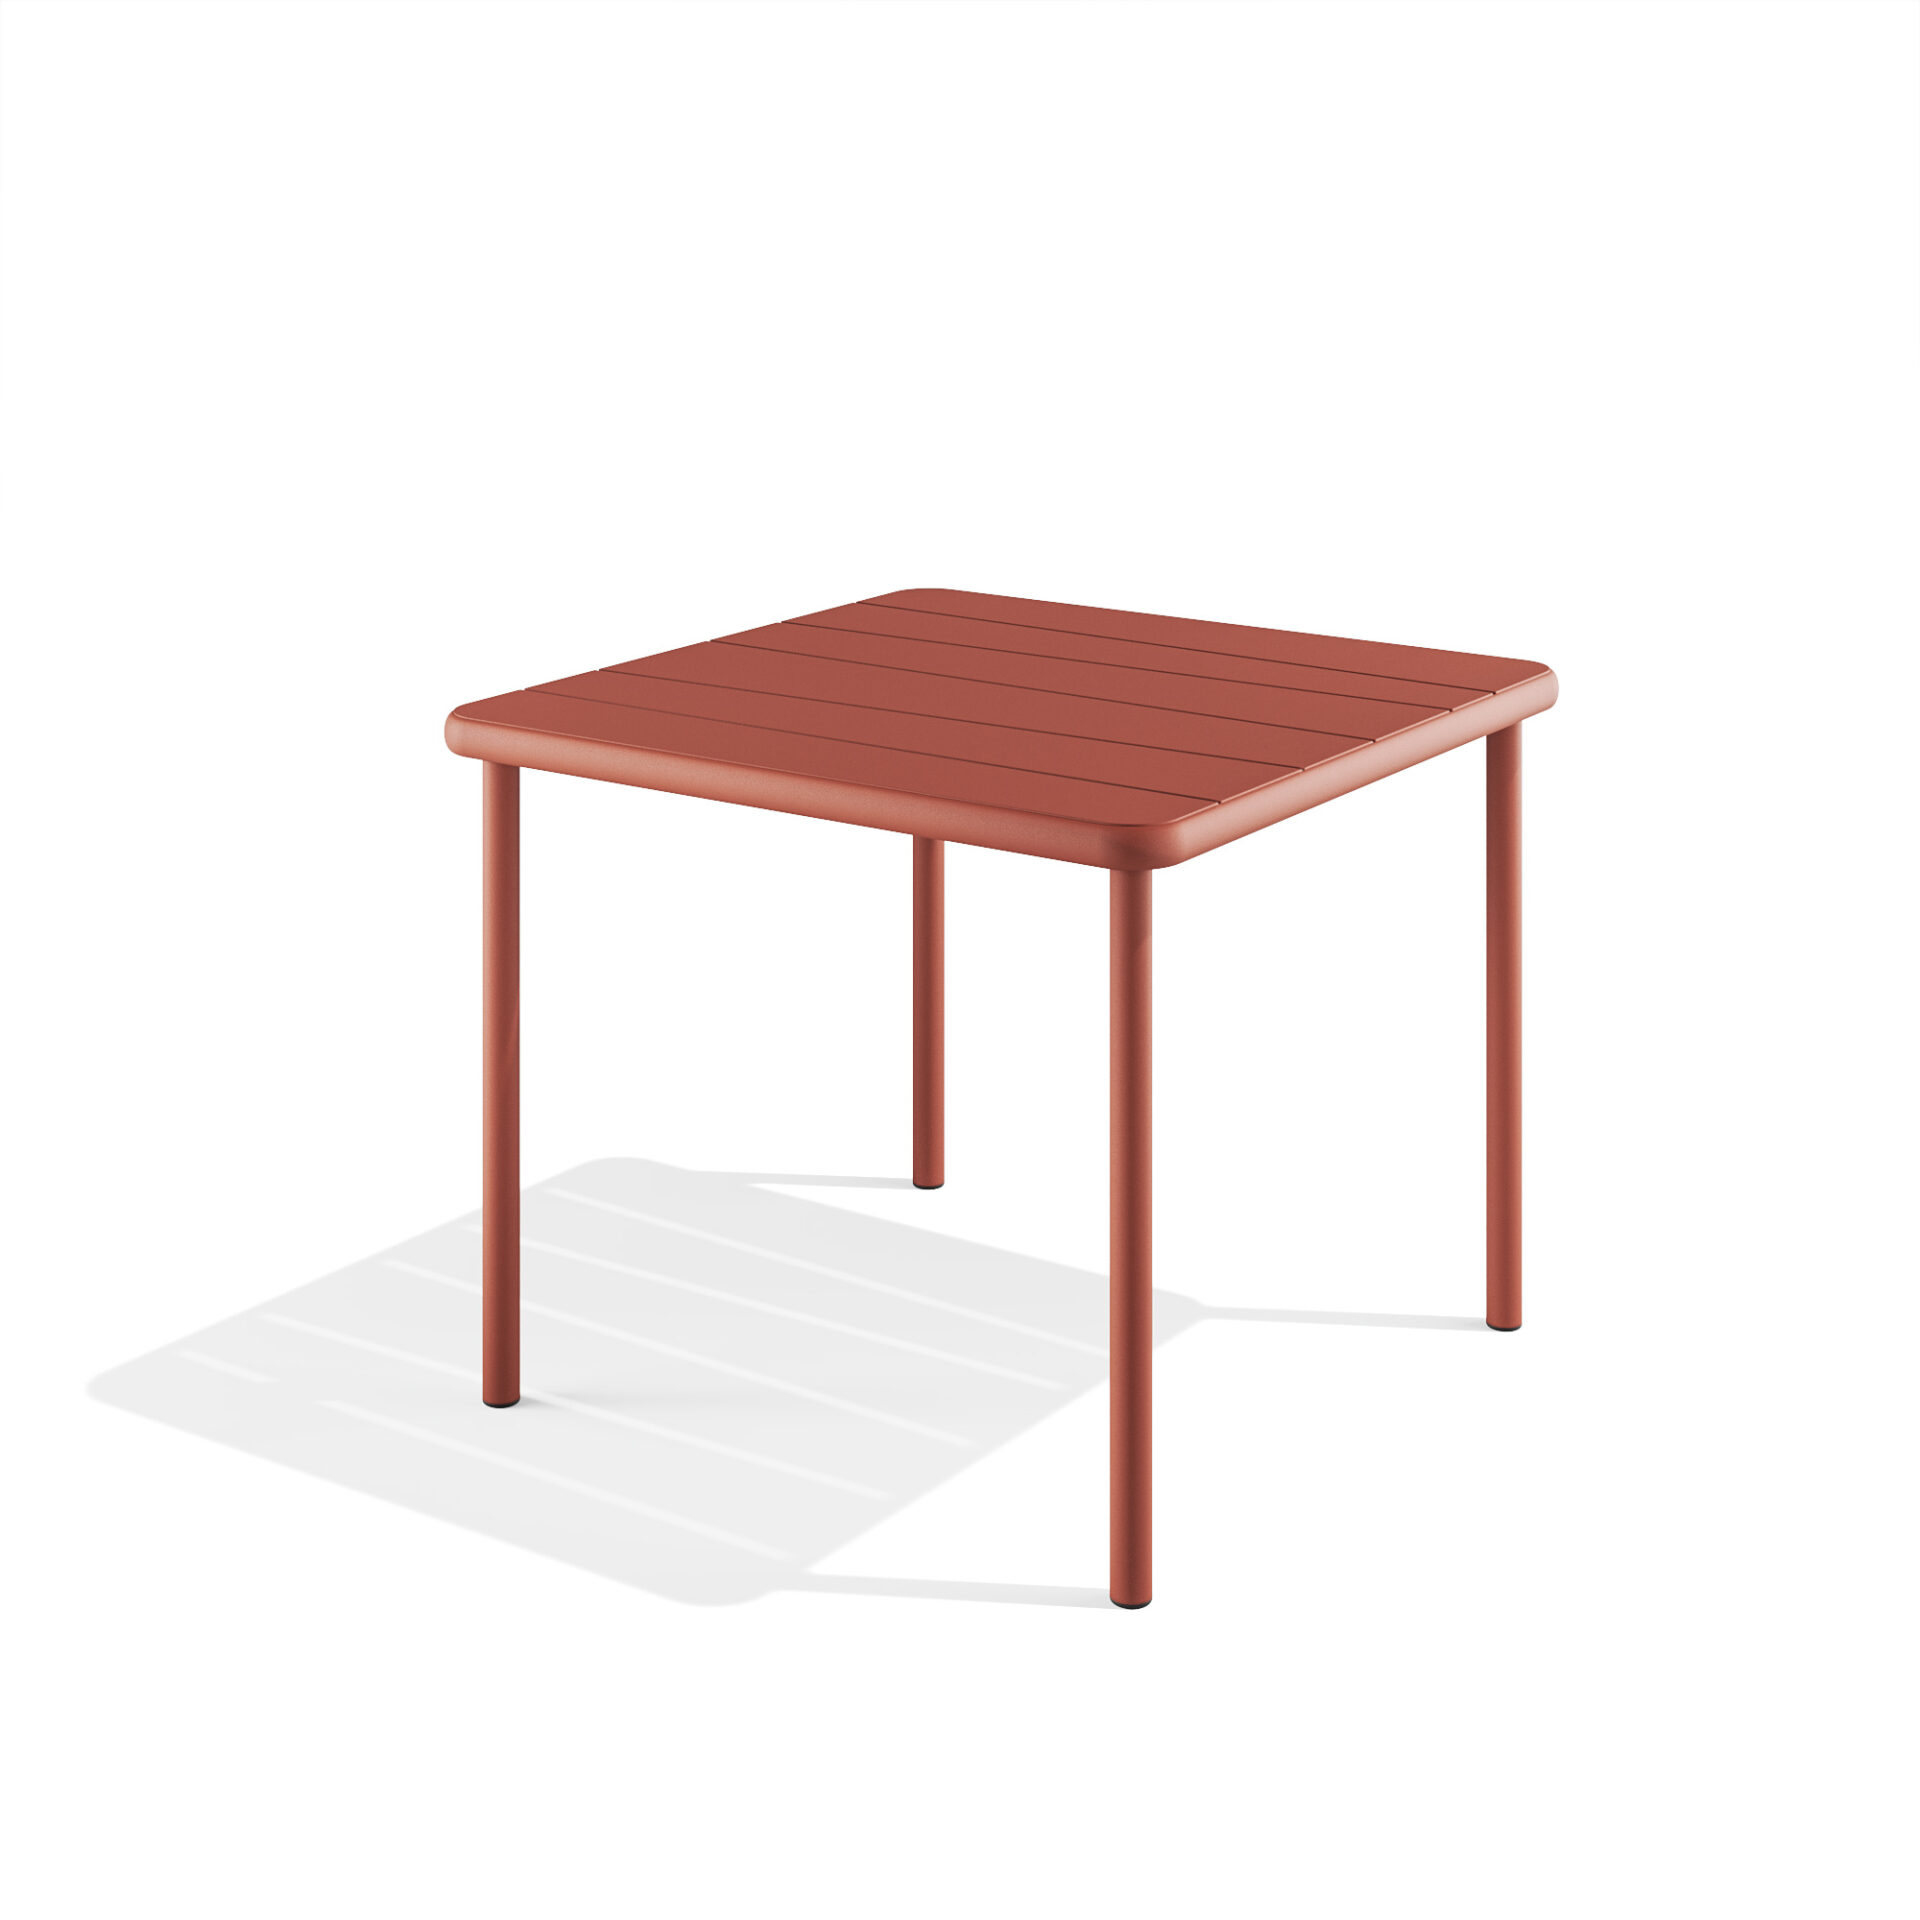 Bangi square table 90